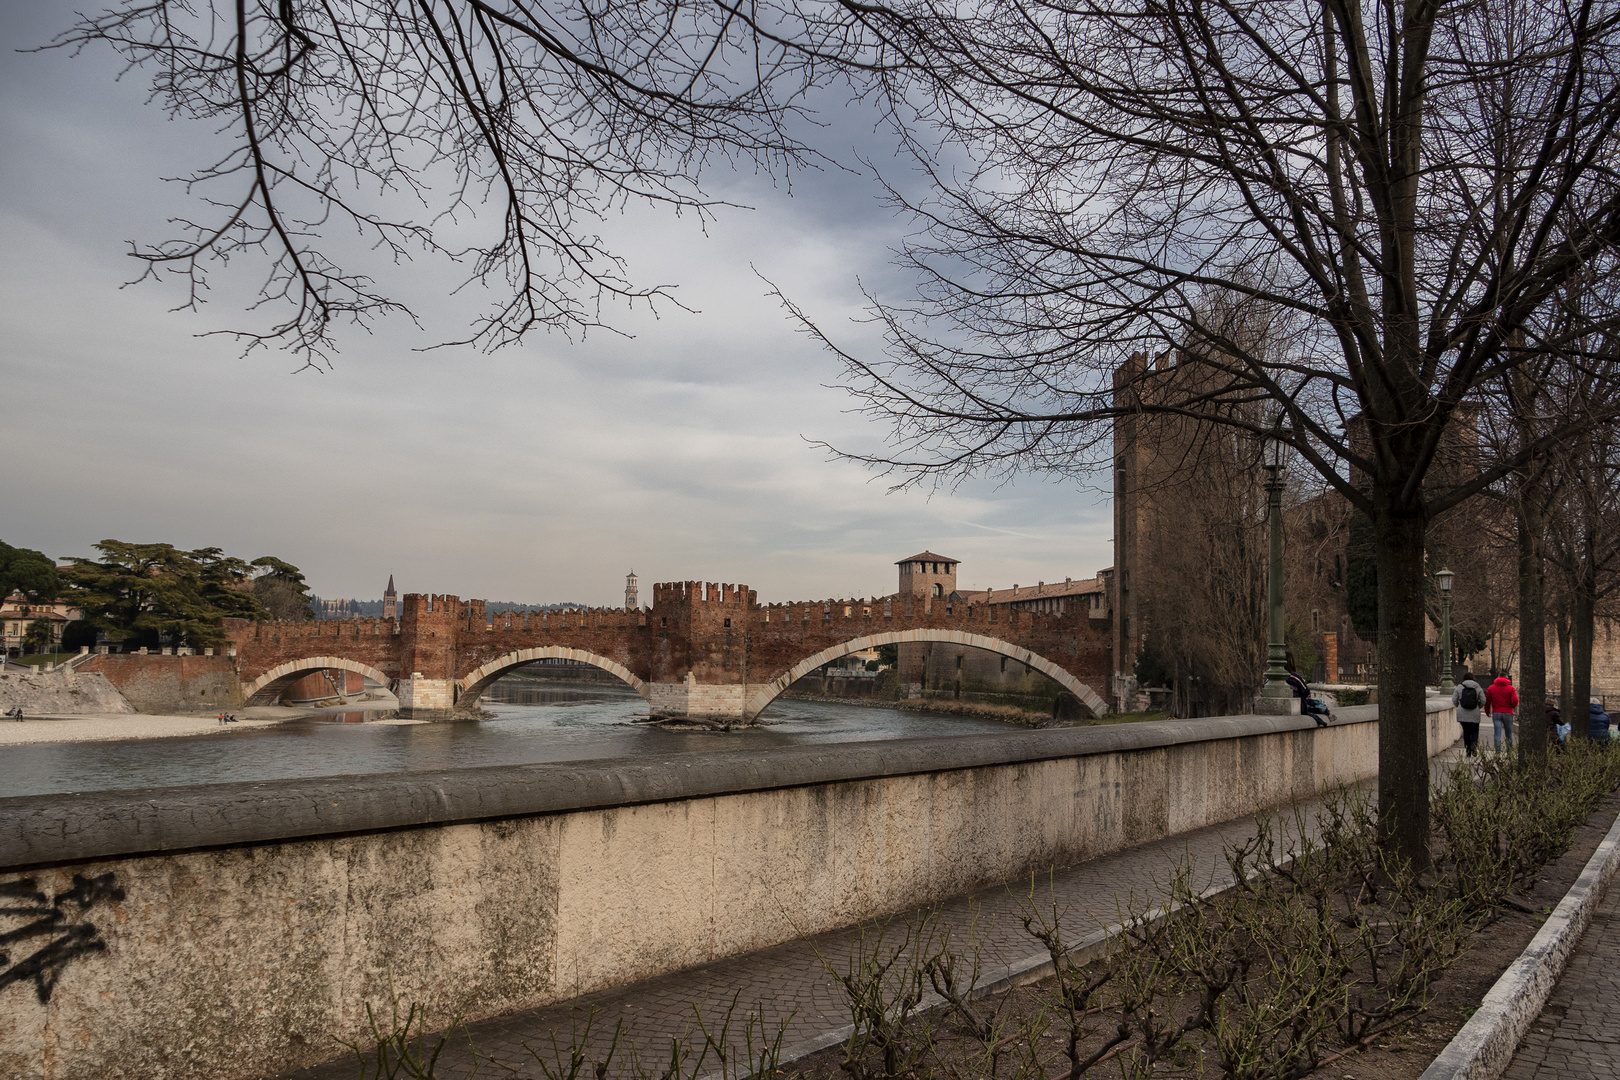 Passeggiata lungo la riva dell'Adige, Verona